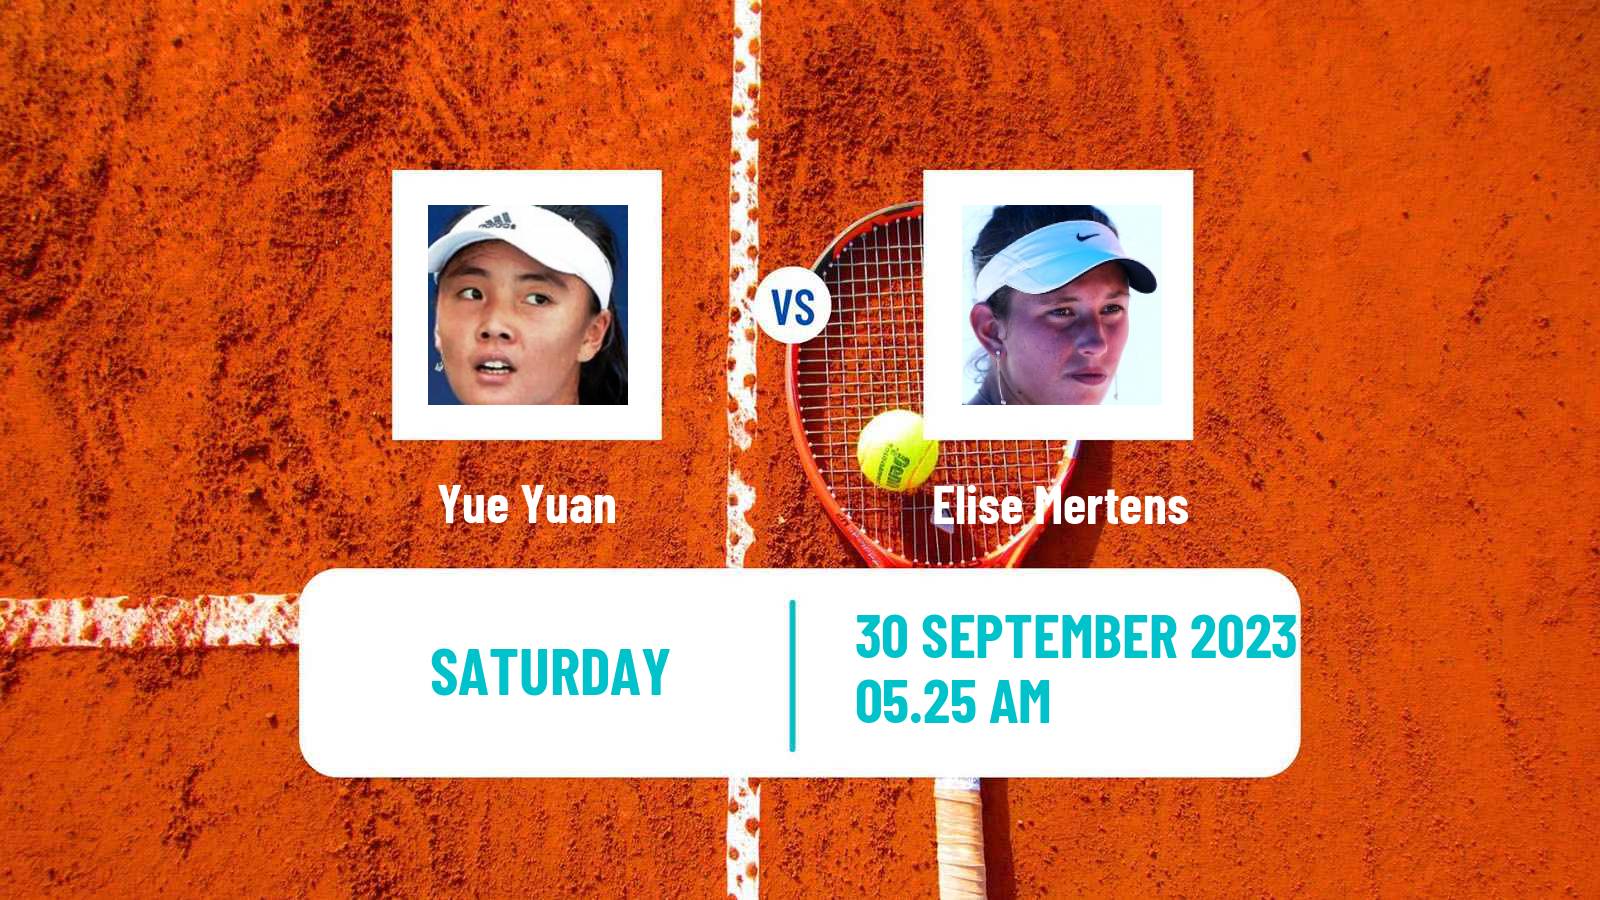 Tennis WTA Beijing Yue Yuan - Elise Mertens